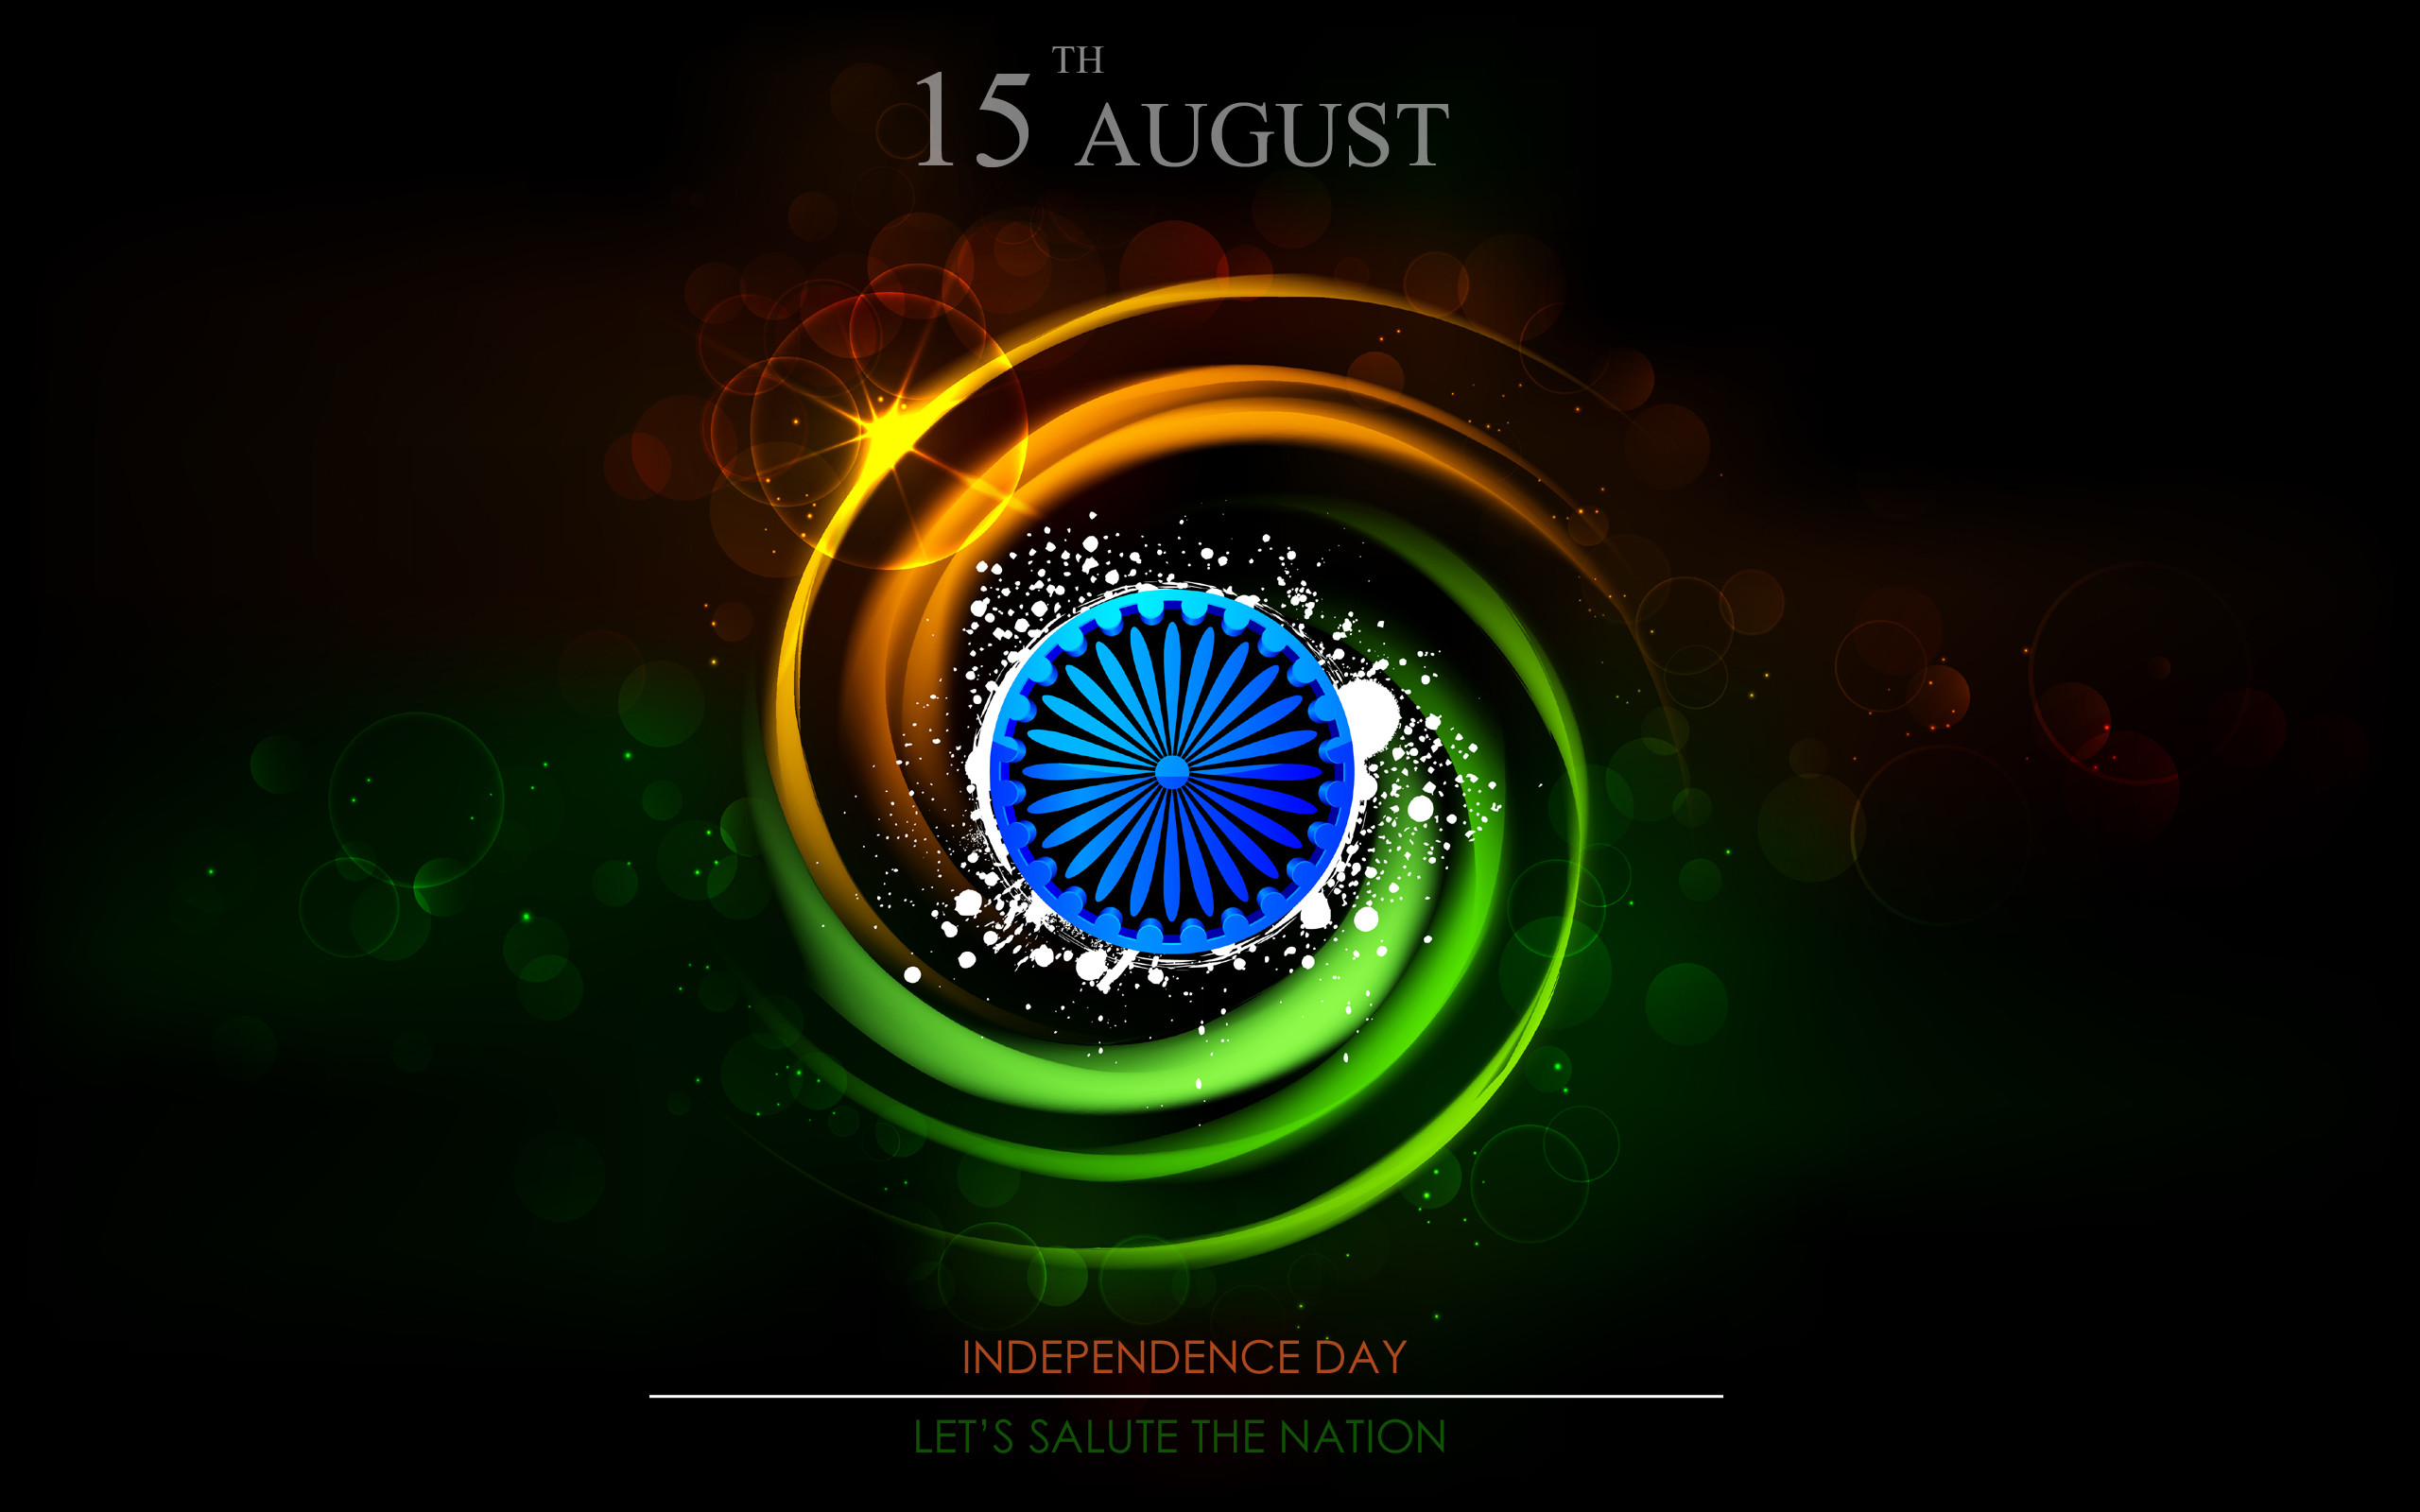 download gratuito di carta da parati giorno dell'indipendenza indiana,arte frattale,disegno grafico,cerchio,grafica,macrofotografia